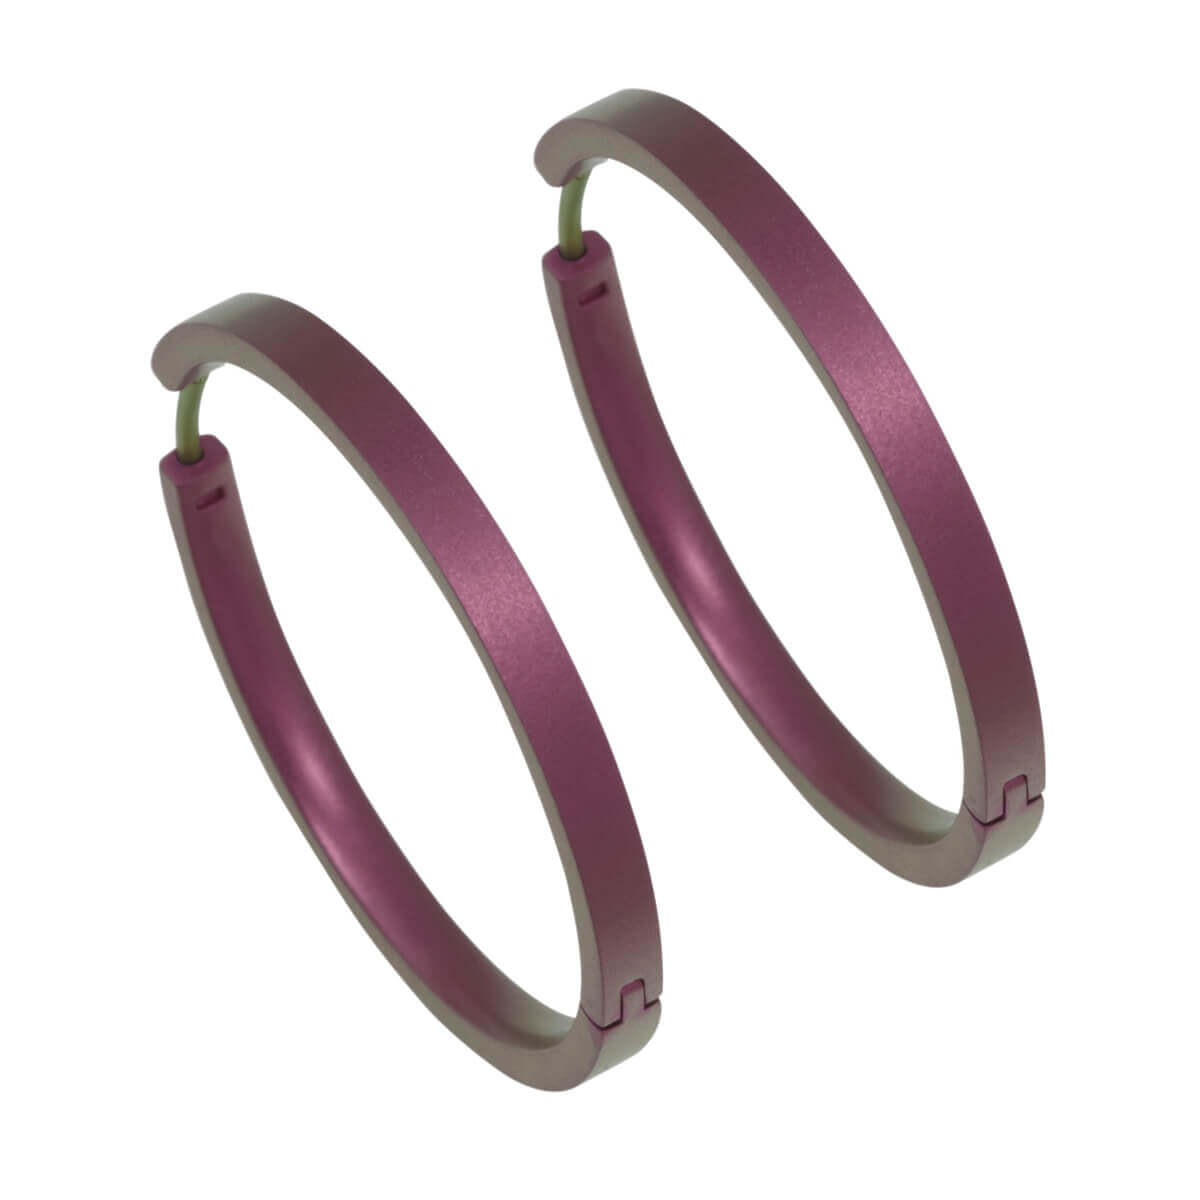 Titanium Large Hinged Hoop Earrings - Pink/Purple Tones